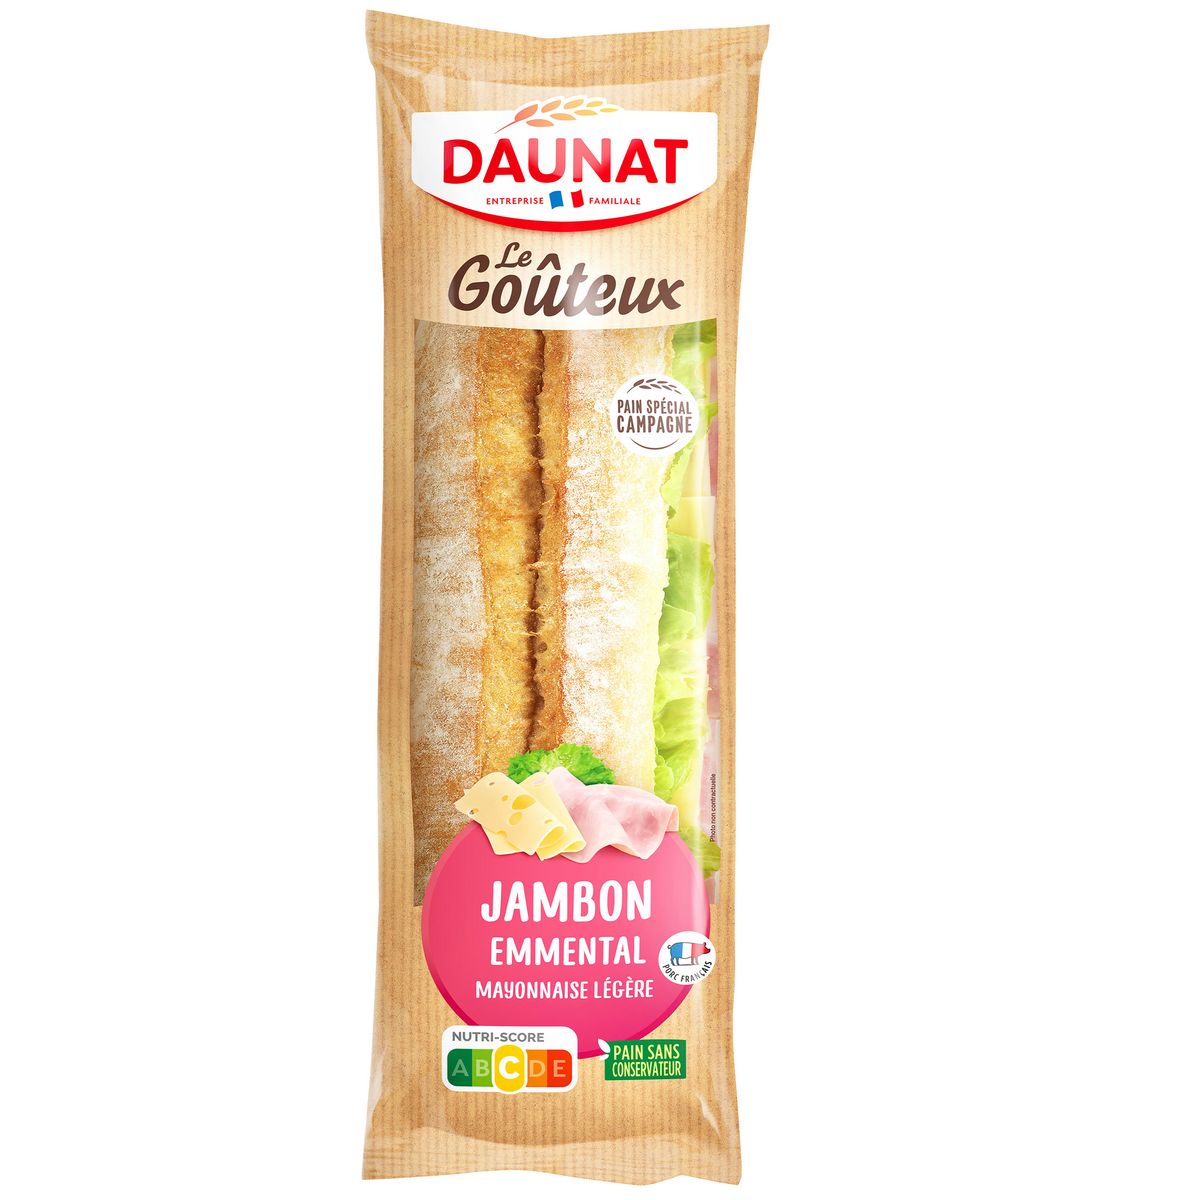 DAUNAT Sandwich baguette jambon emmental crudités pain de campagne 220g